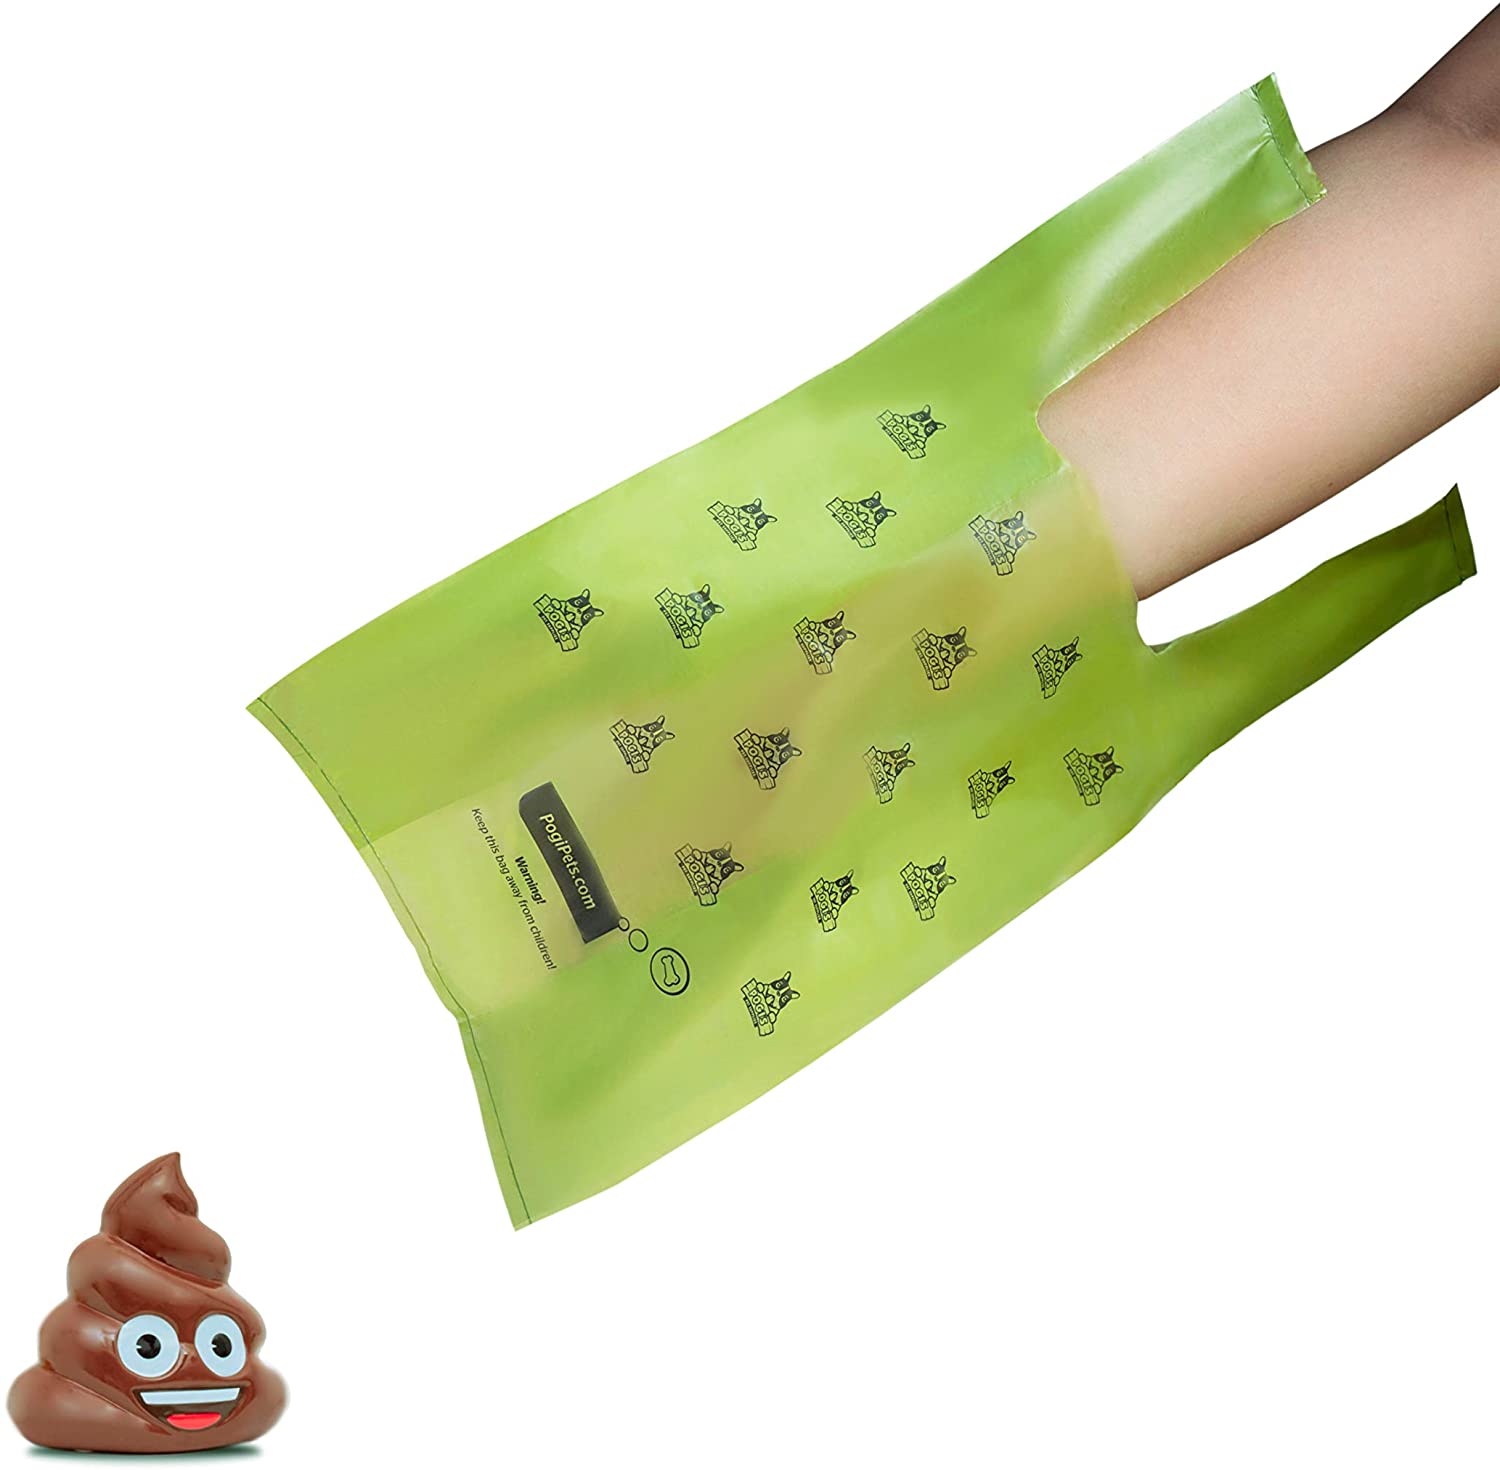  Pogi's Poop Bags - 900 Bolsas para excremento de Perro con manijas de Amarre fácil - Biodegradables, Perfumadas, Herméticas 